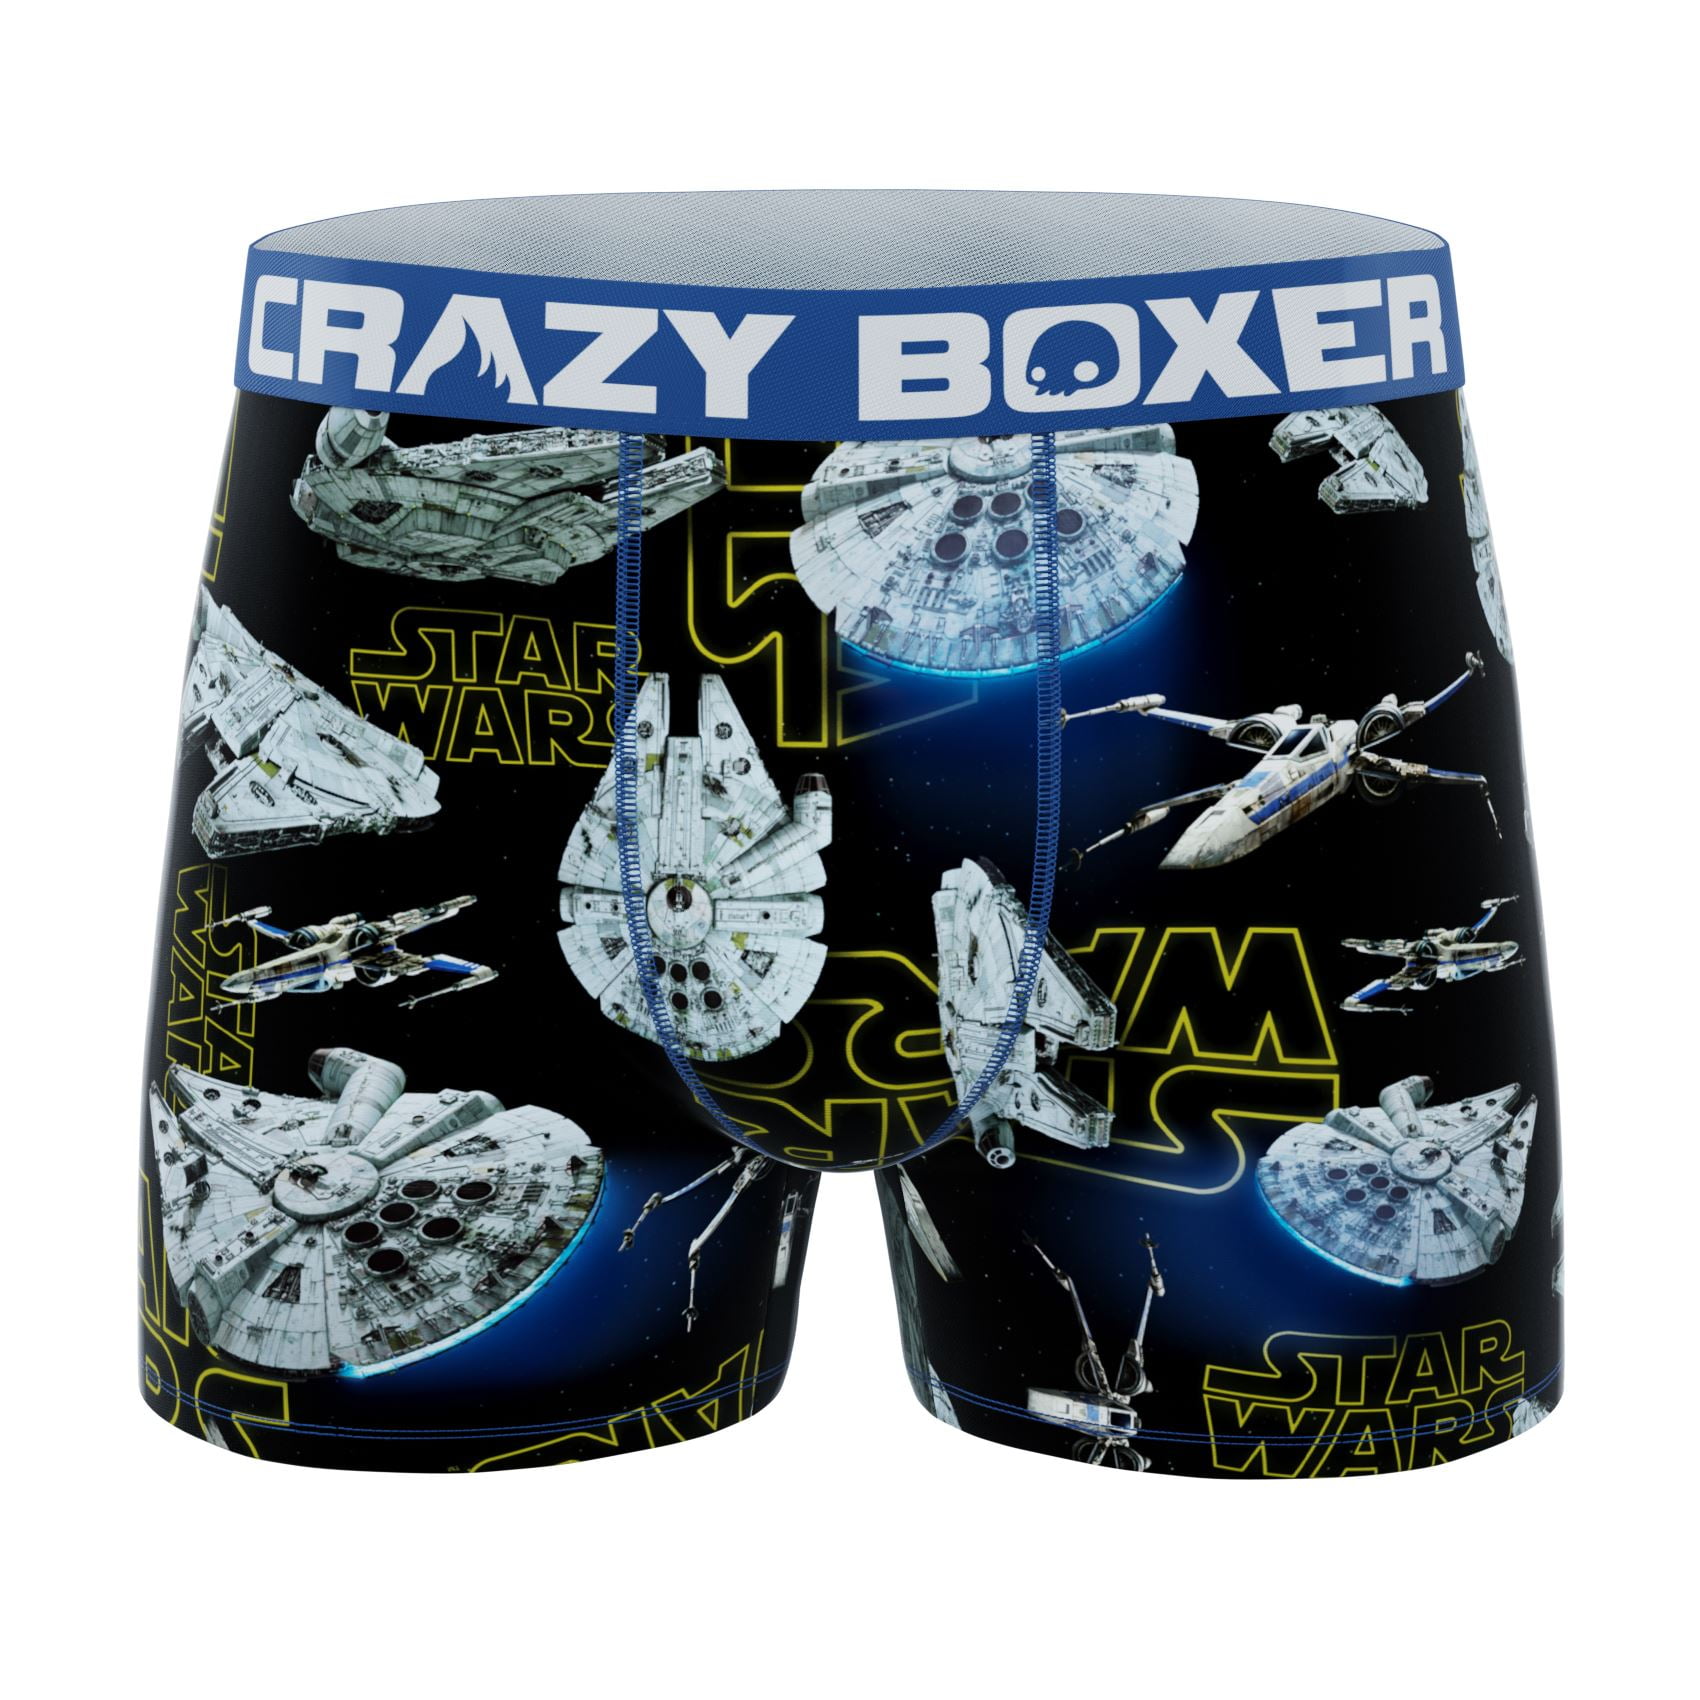 CRAZYBOXER Men's Underwear Star Wars Non-slip waistband Freedom of